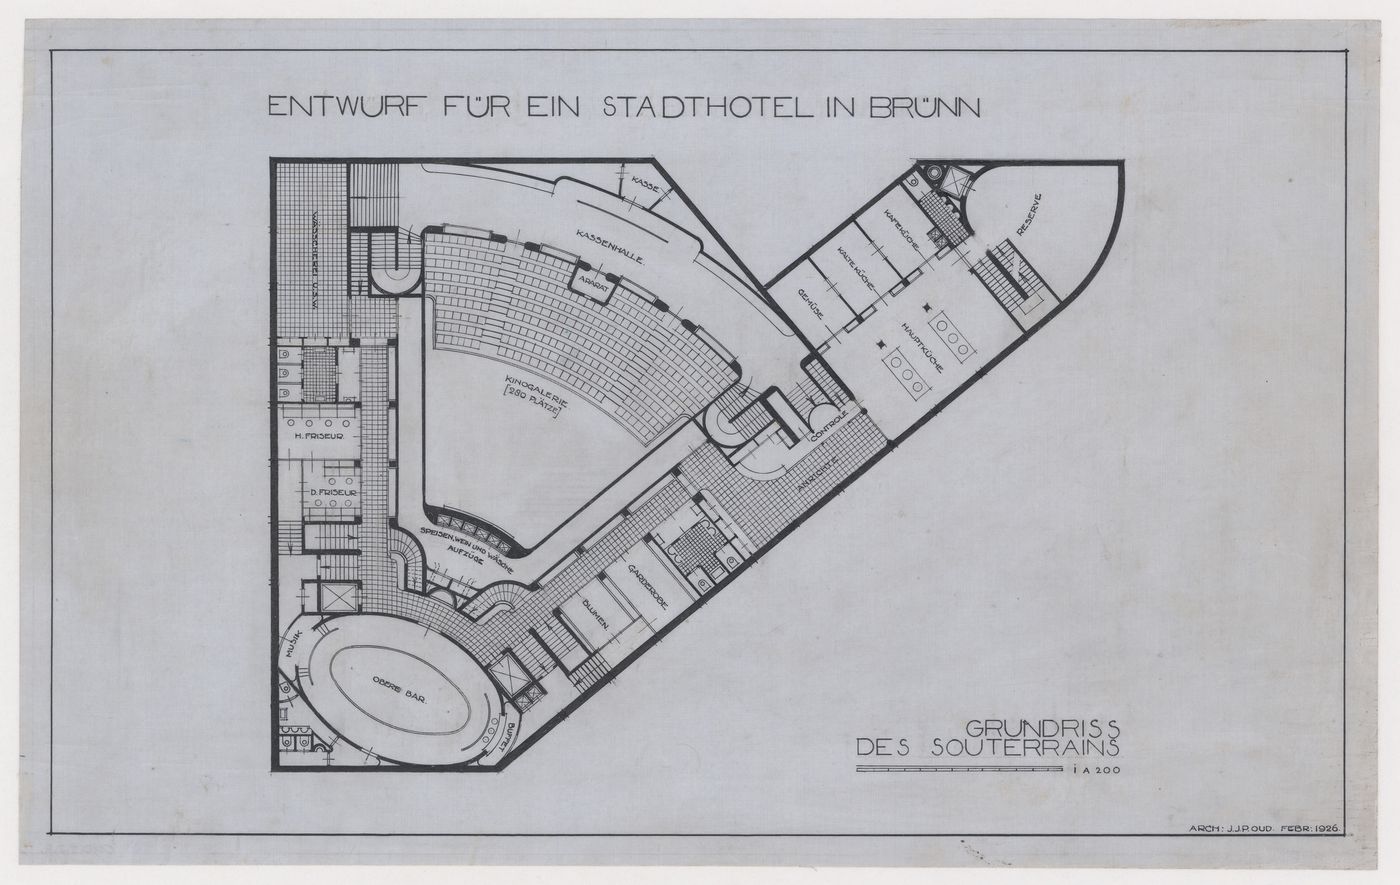 Lower basement plan for Hotel Stiassni, Brno, Czechoslovakia (now Czech Republic)